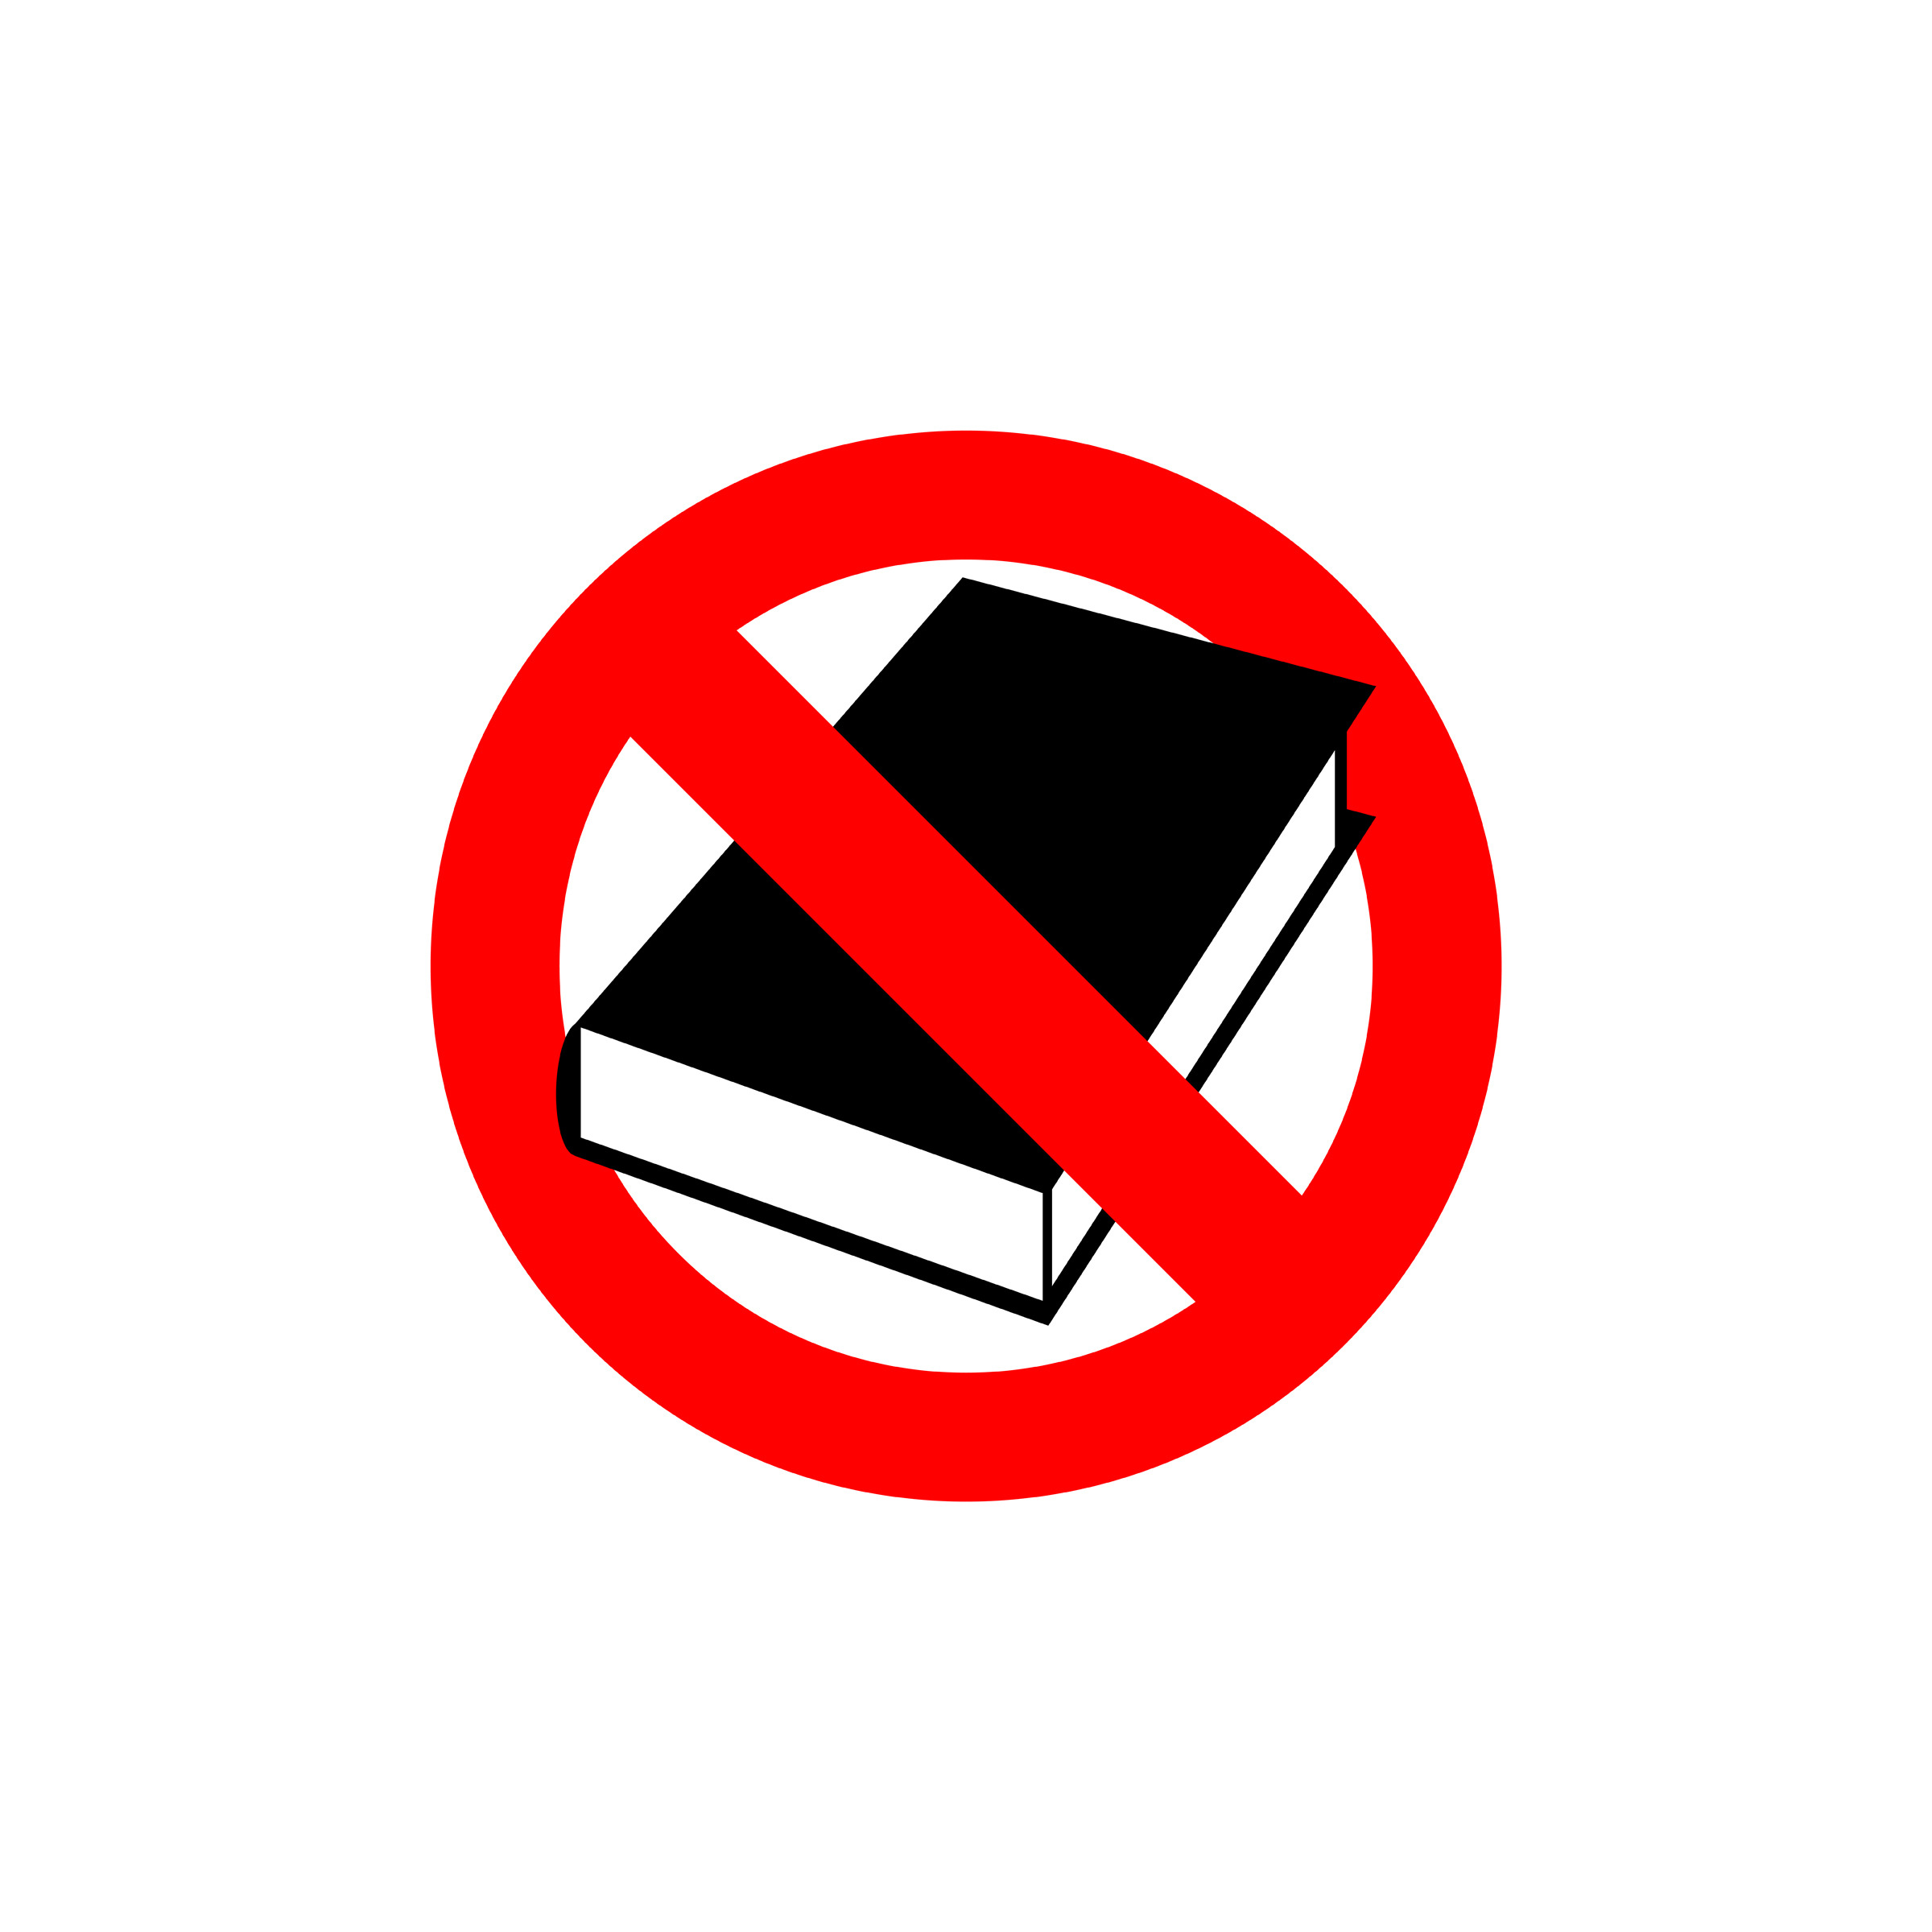 Ее запрет читать полностью. Перечеркнутая книга. Знак перечеркнутая книжка. Запрещенные книги. Запрет нельзя.